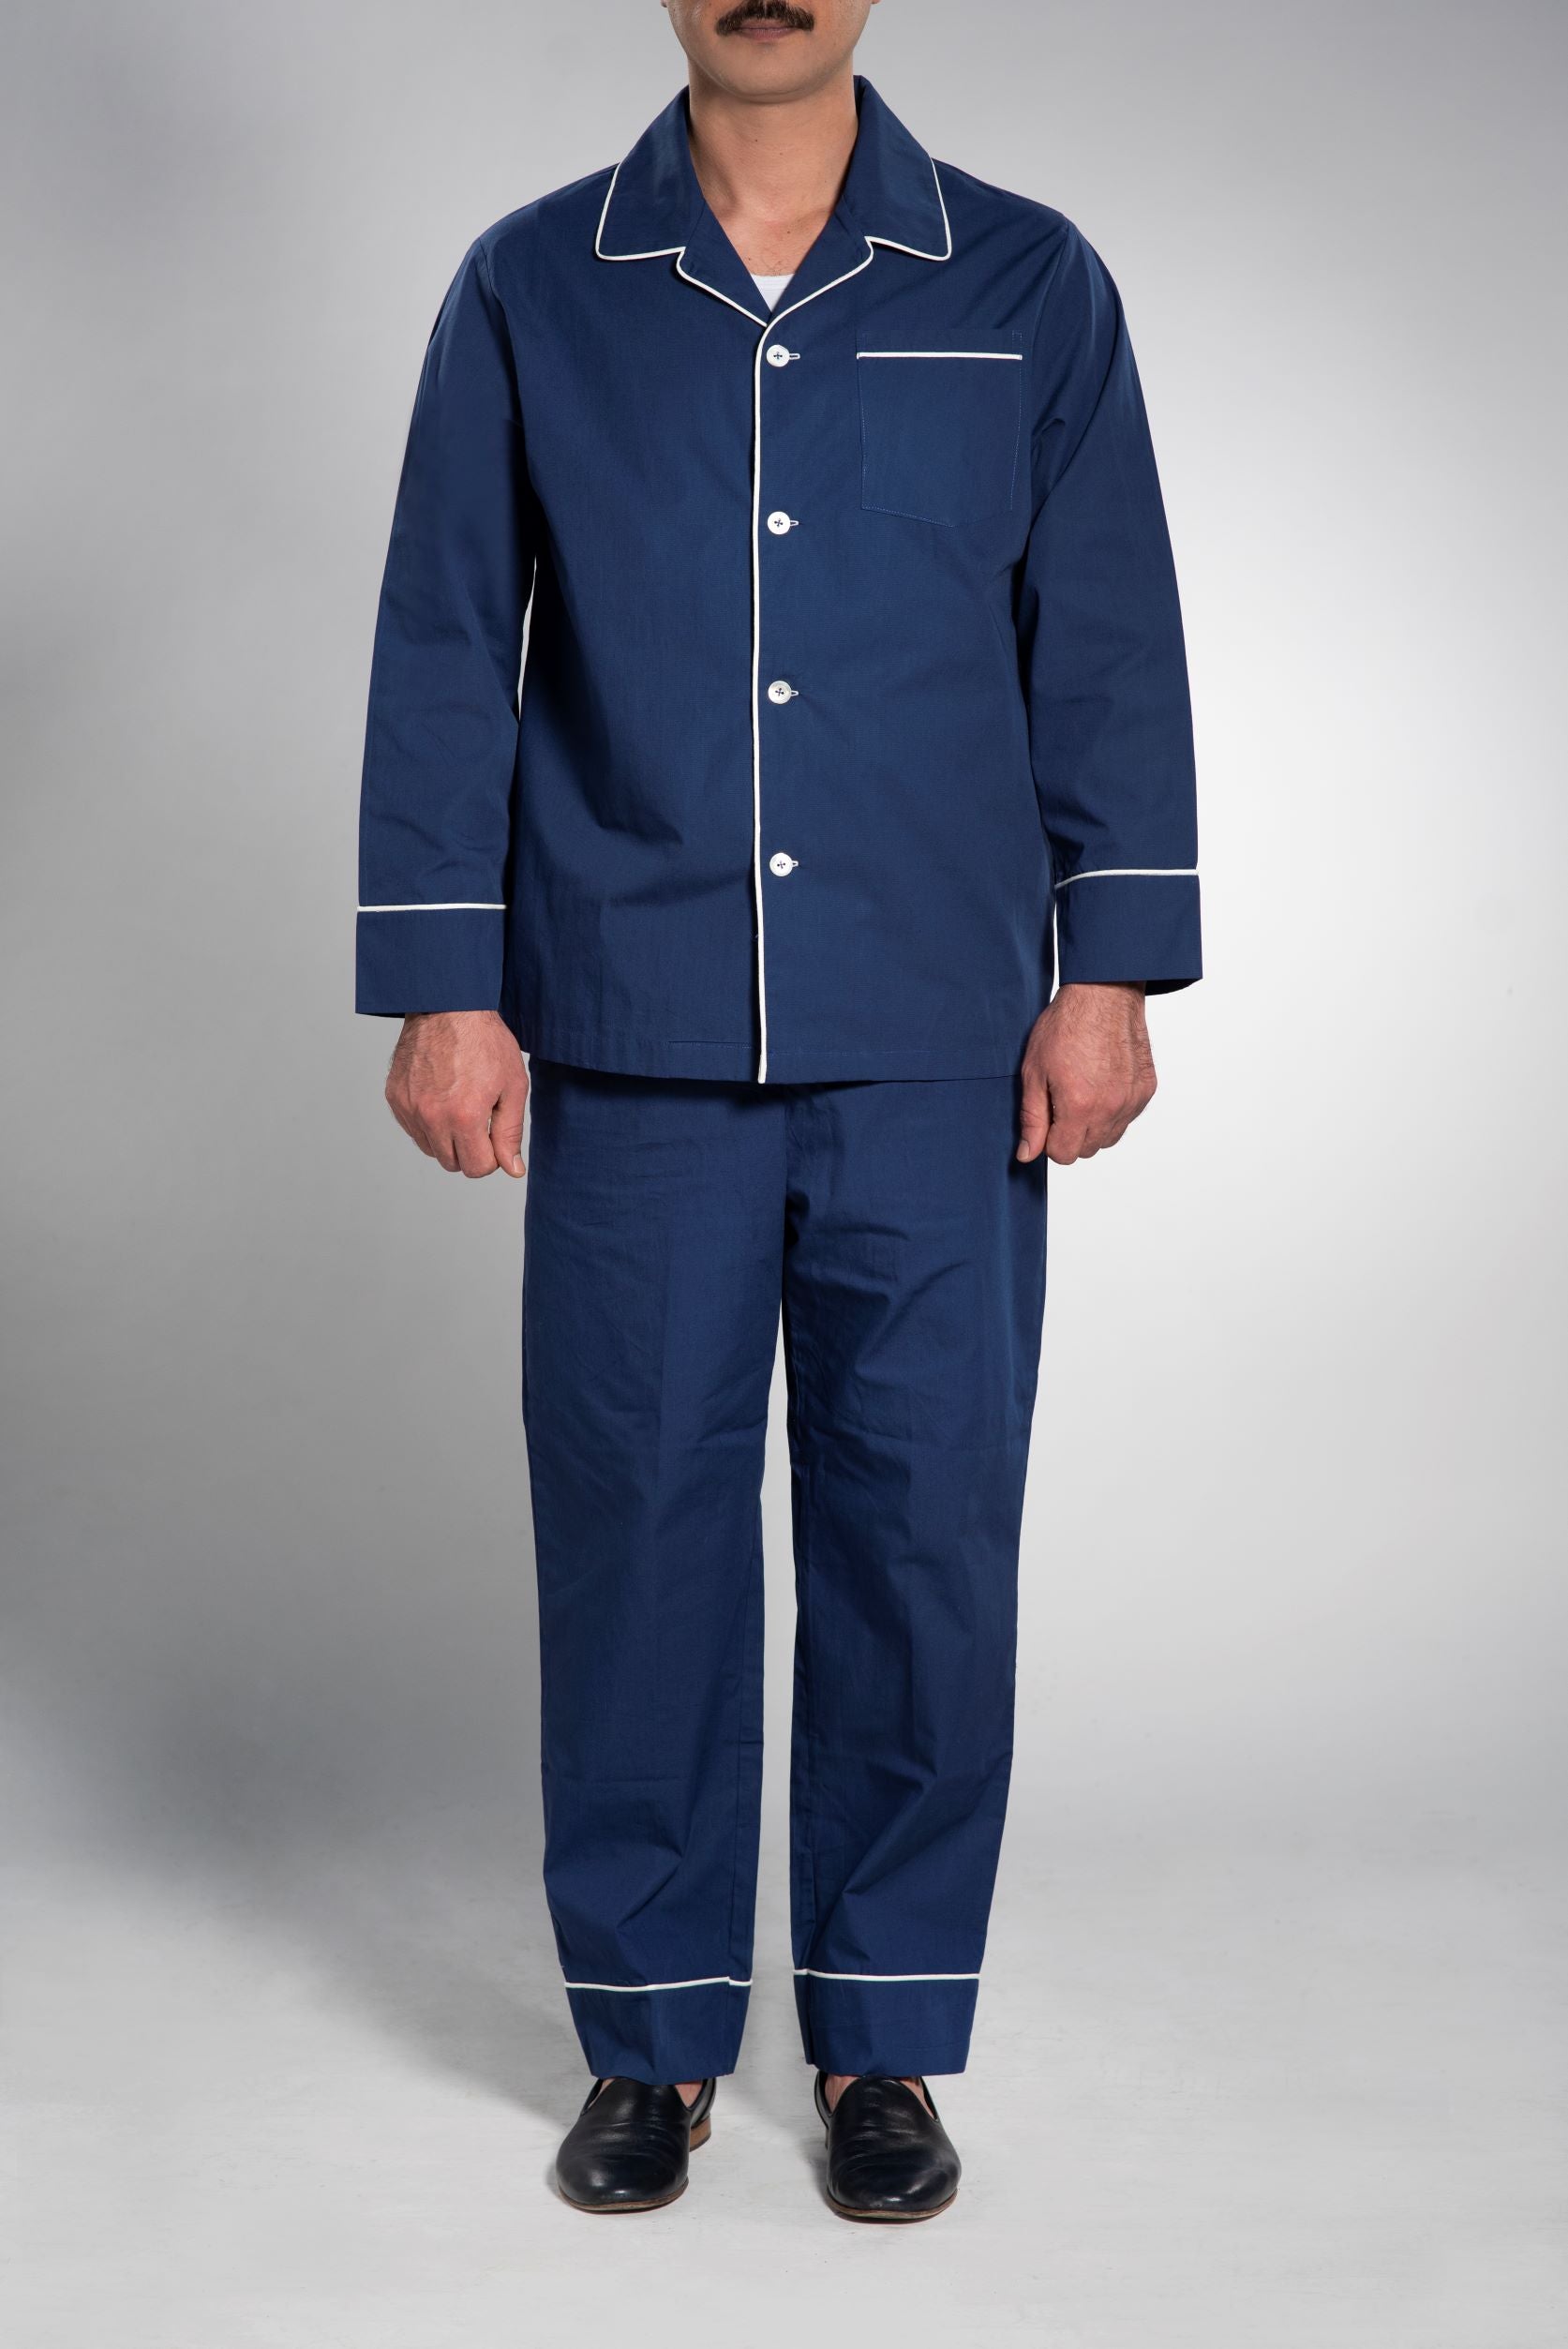 Herren Schlafanzug Baumwolle-Popeline Navy Uni Classic Fit